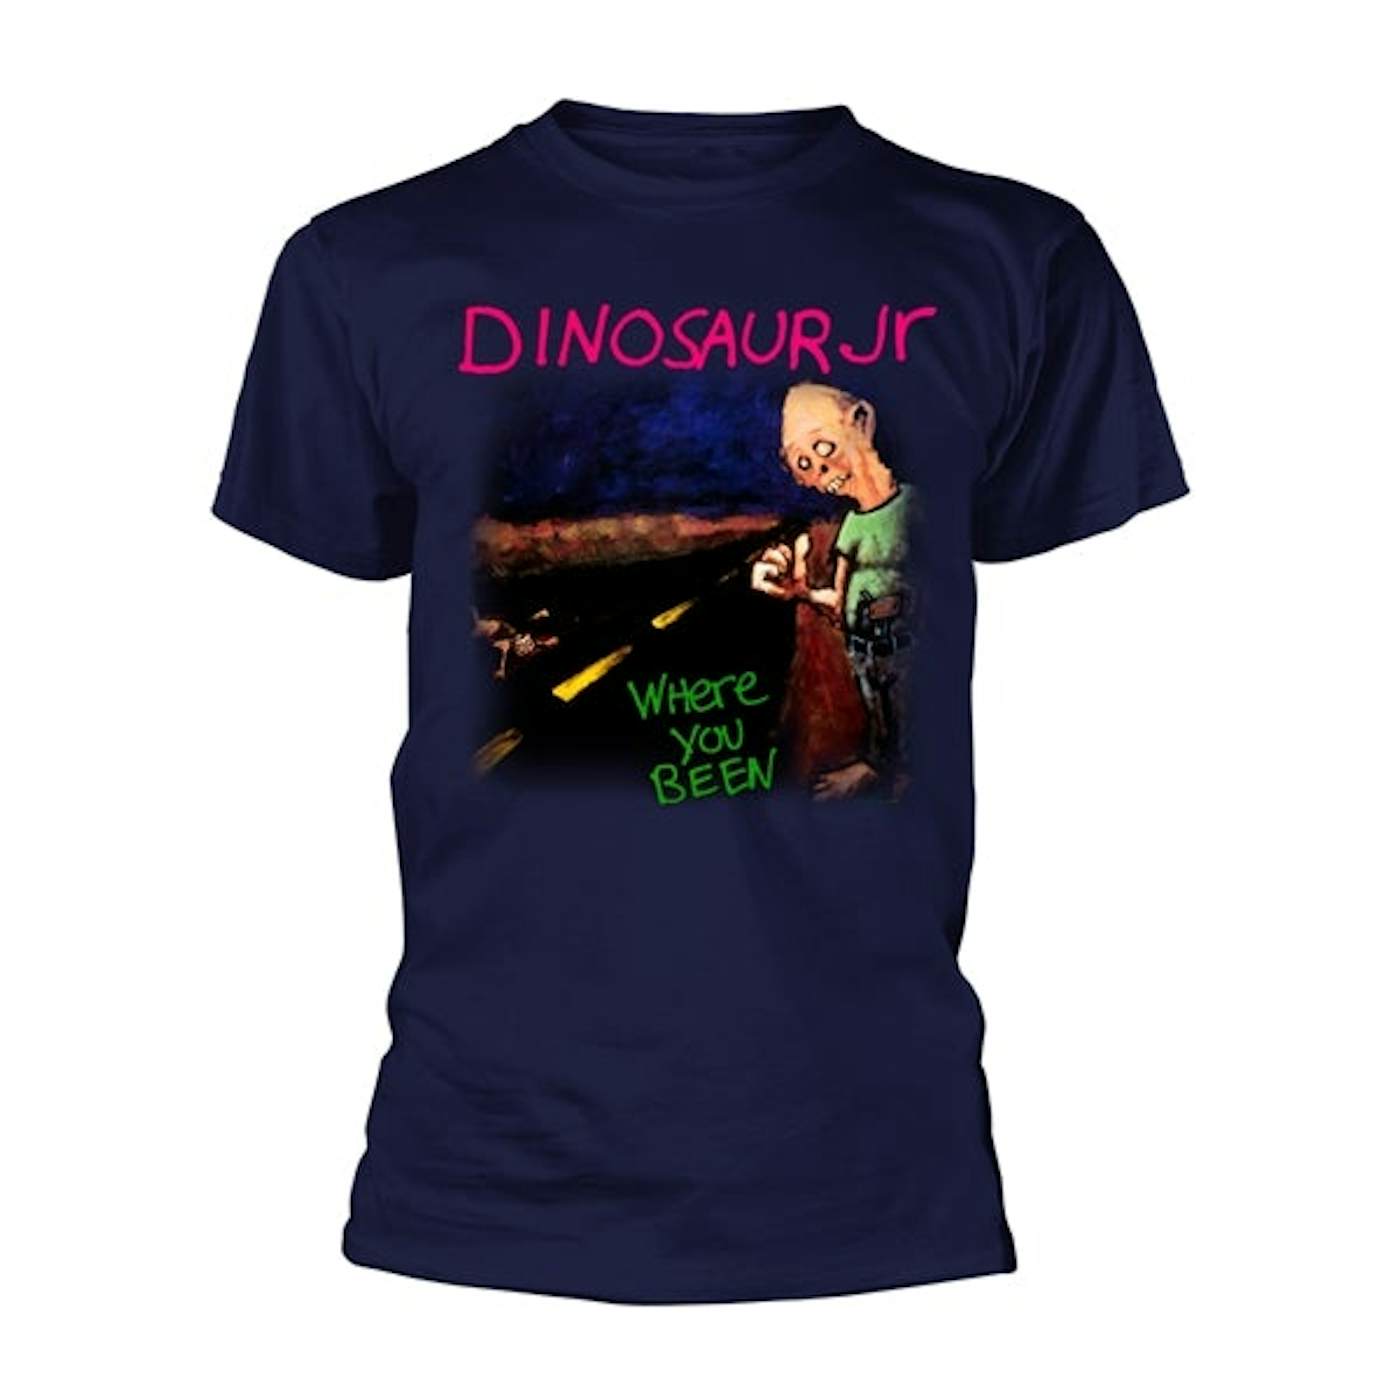 Dinosaur Jr. T-Shirt - Where You Been